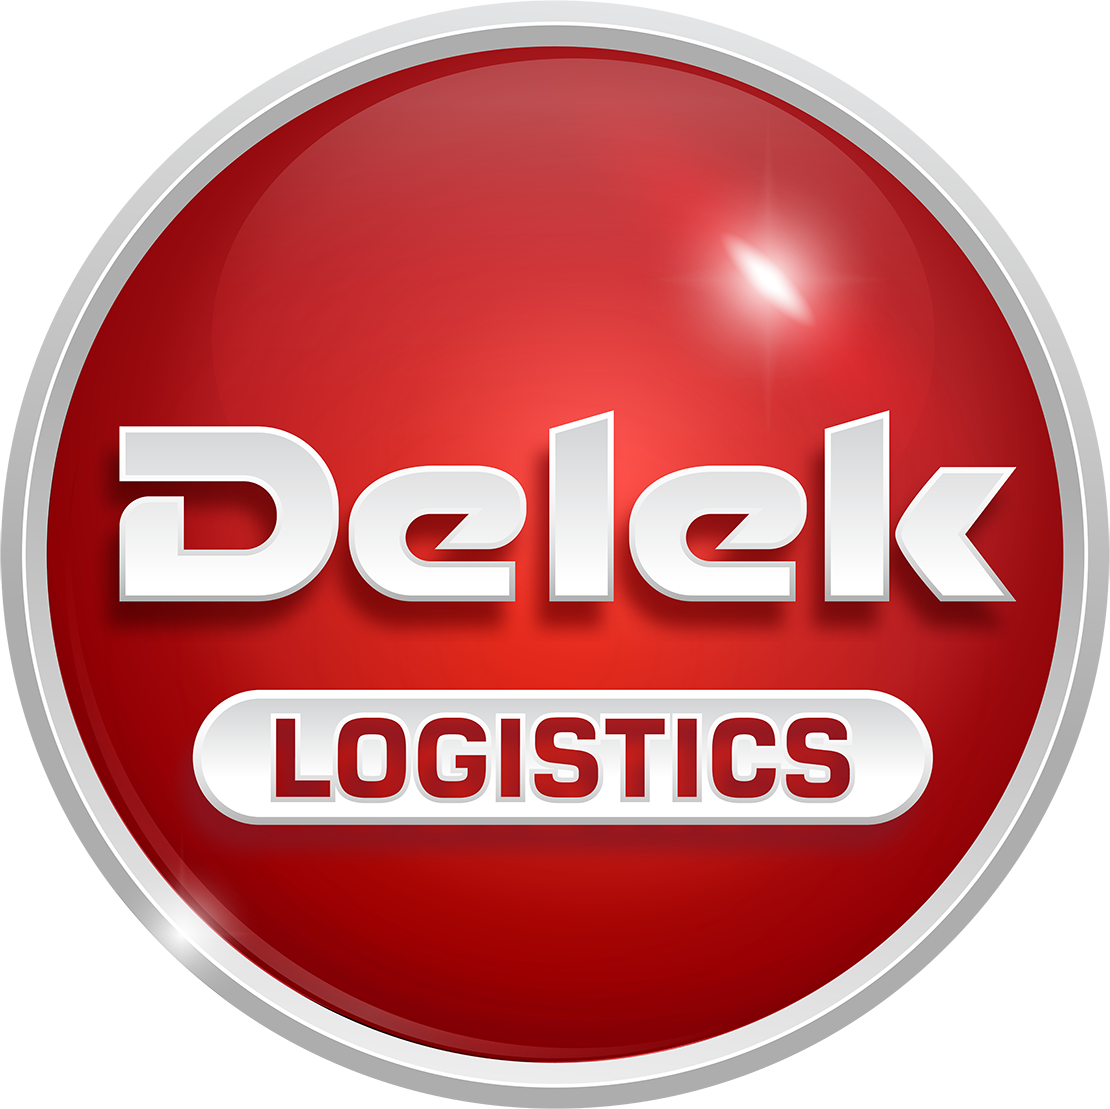 Delek Logistics Partners logo (PNG transparent)